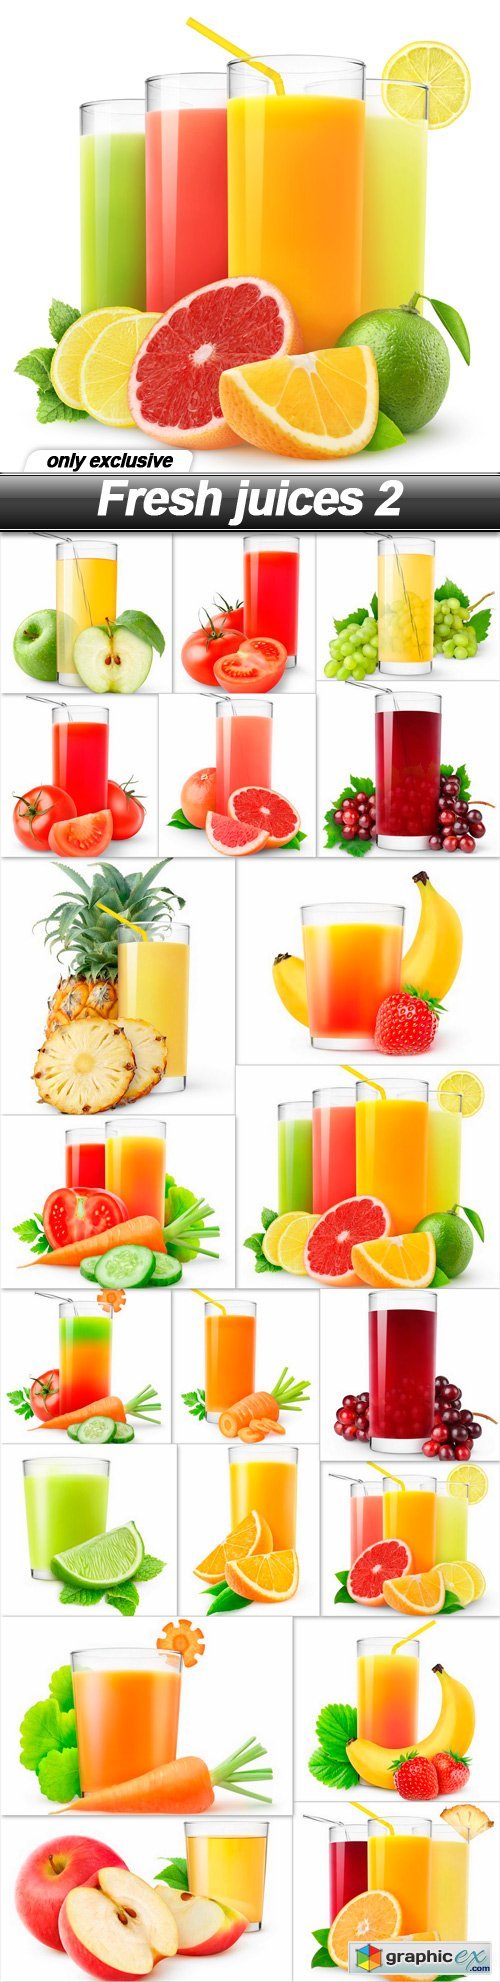 Fresh juices 2 - 20 UHQ JPEG